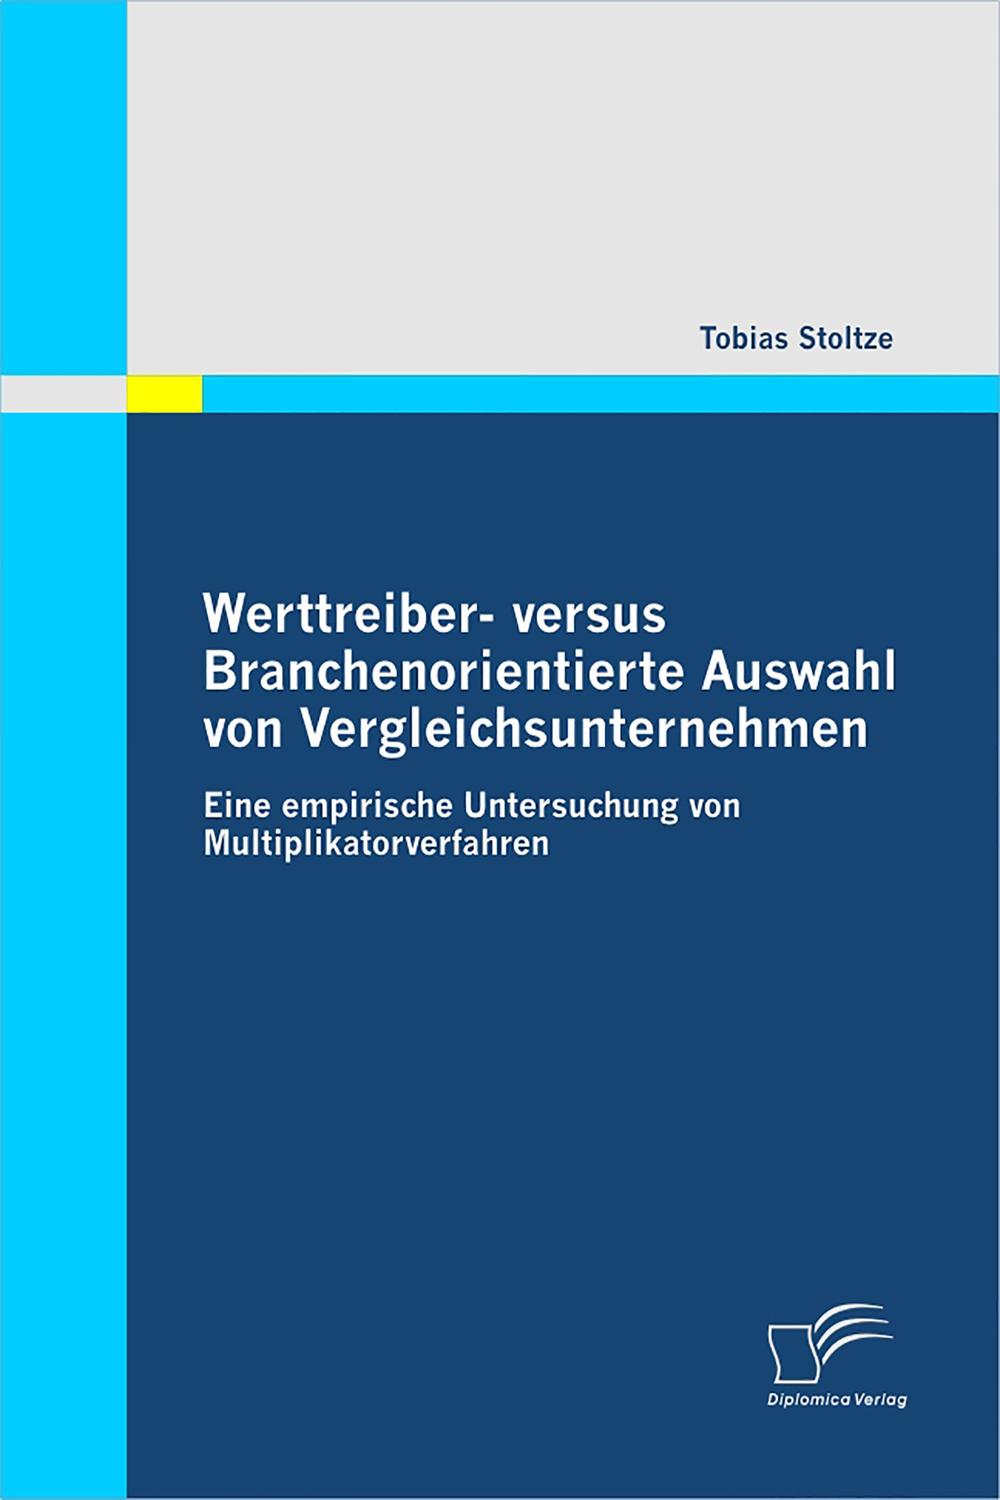 Werttreiber- versus Branchenorientierte Auswahl von Vergleichsunternehmen - Tobias Stoltze